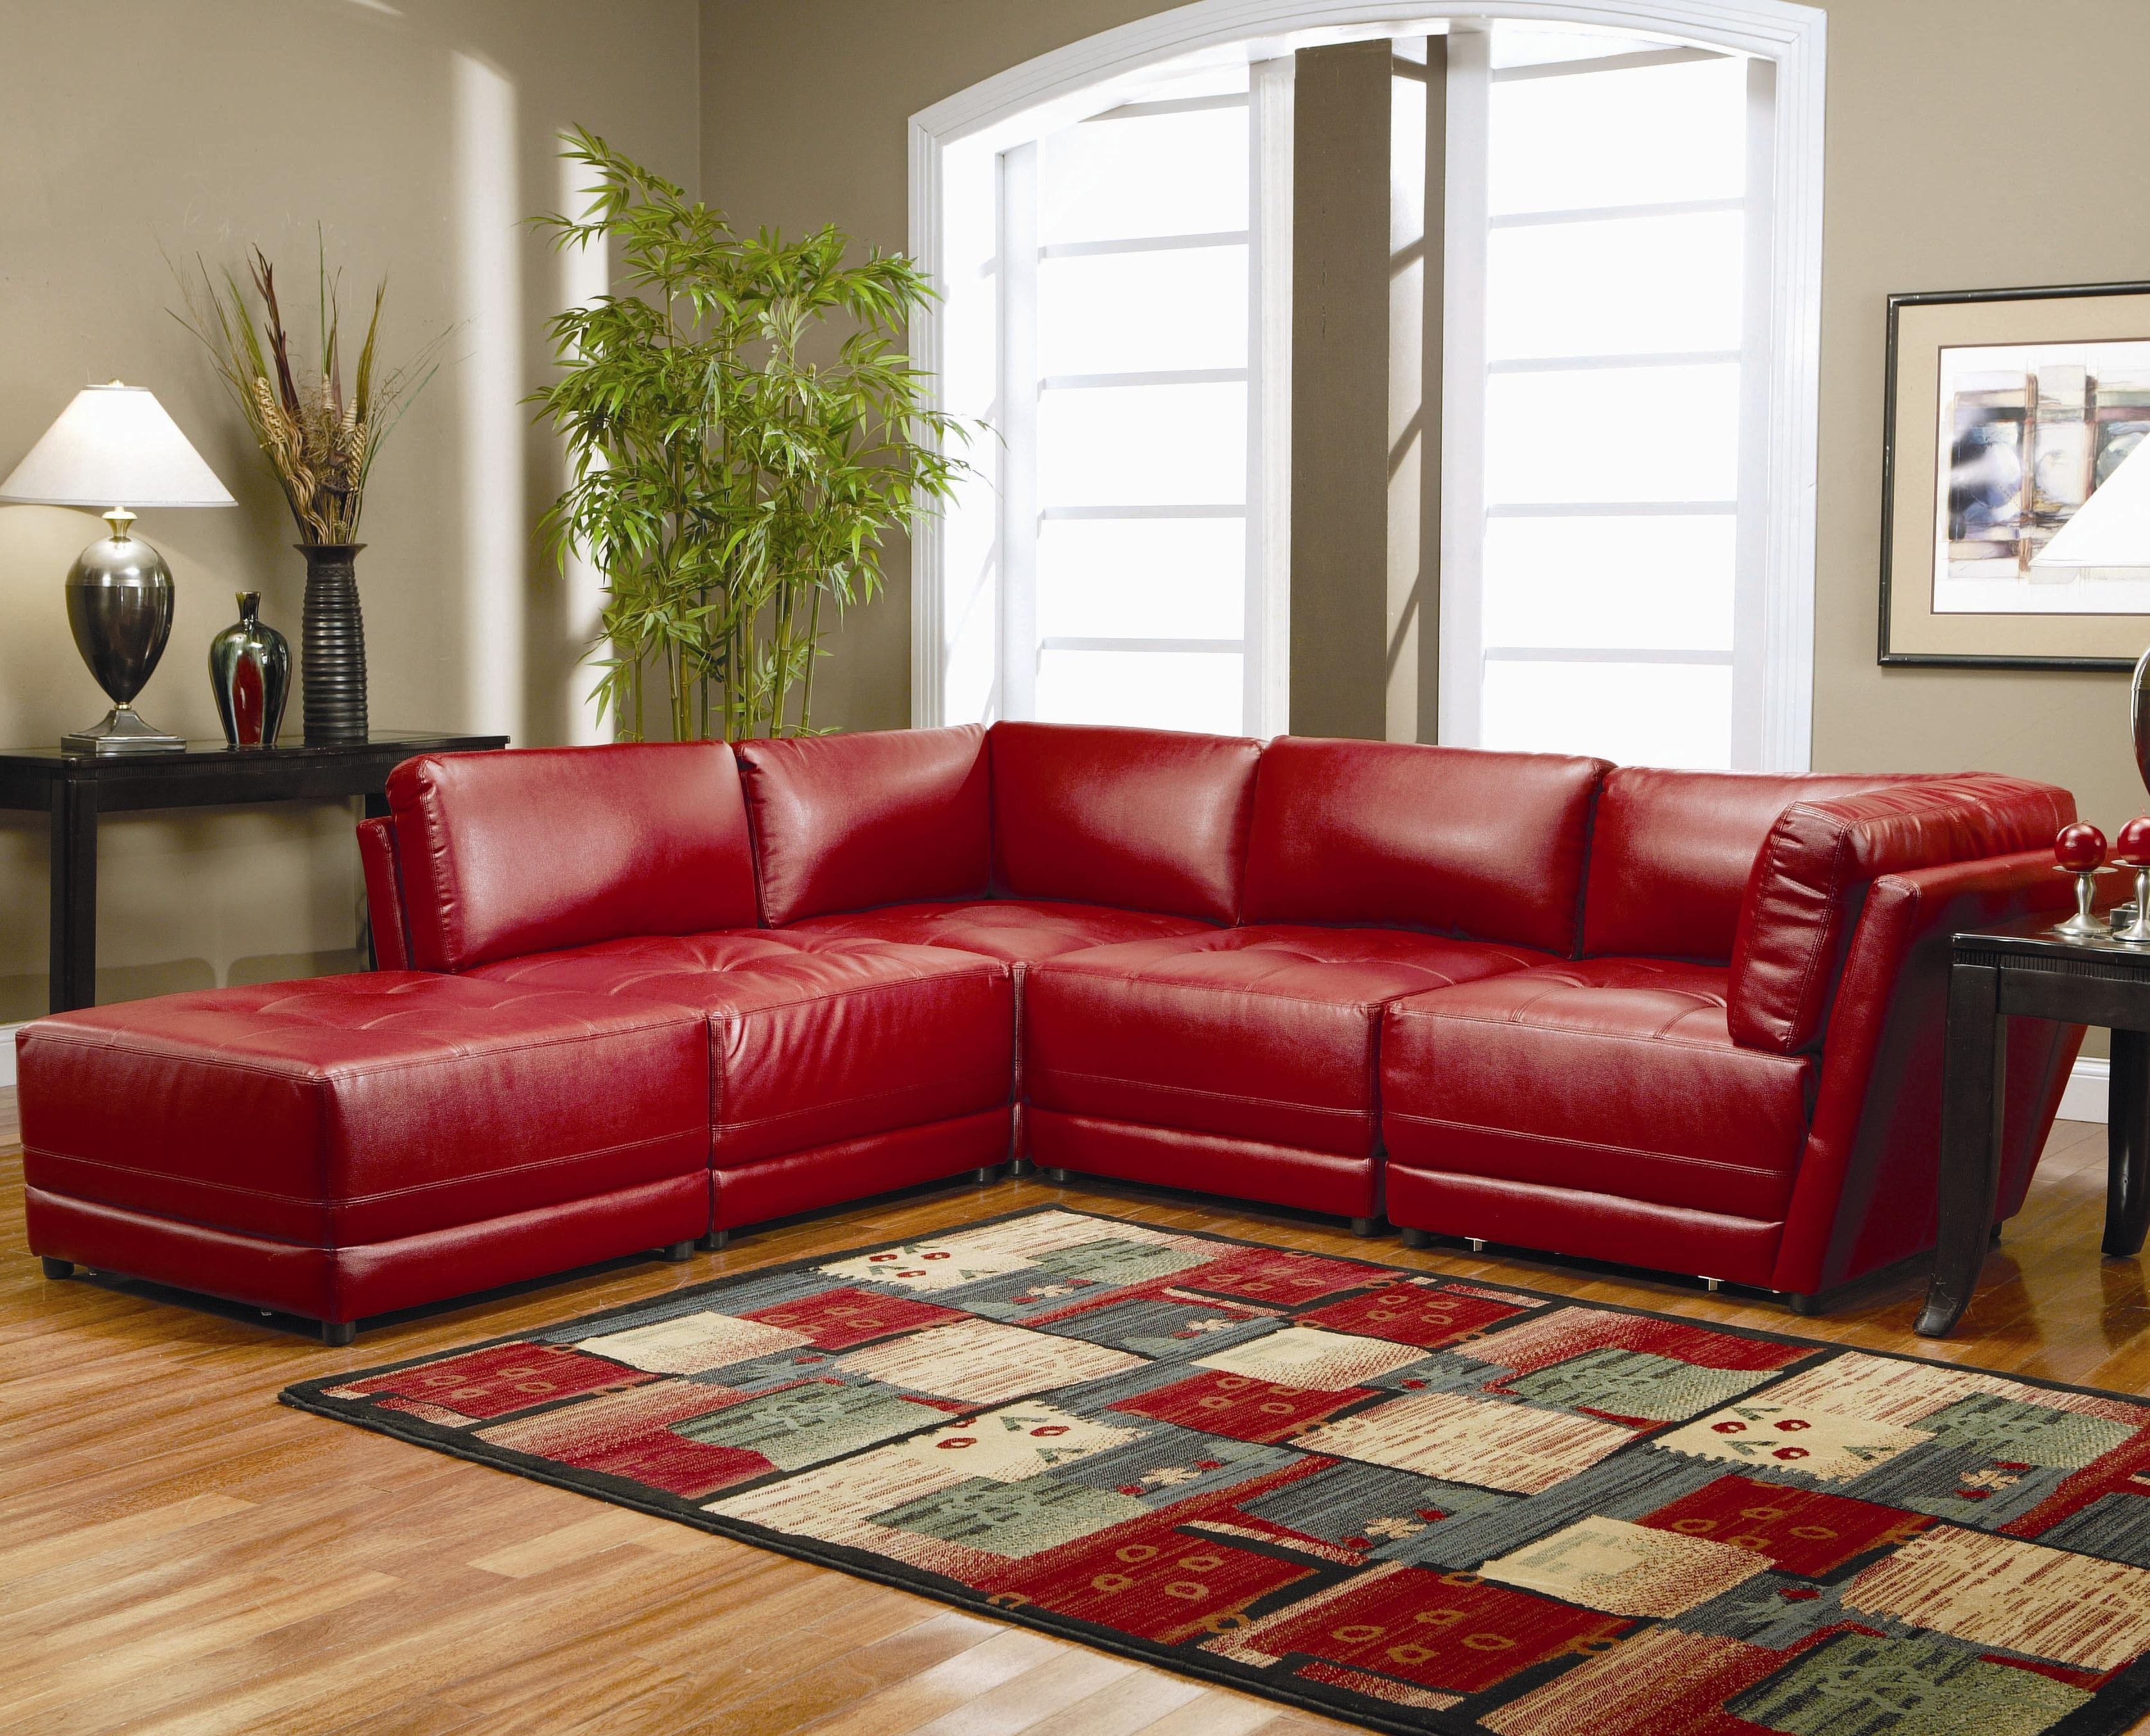 Мебель кожаные диваны. Красивые диваны. Красный кожаный диван. Модные диваны. Красный кожаный диван в интерьере.